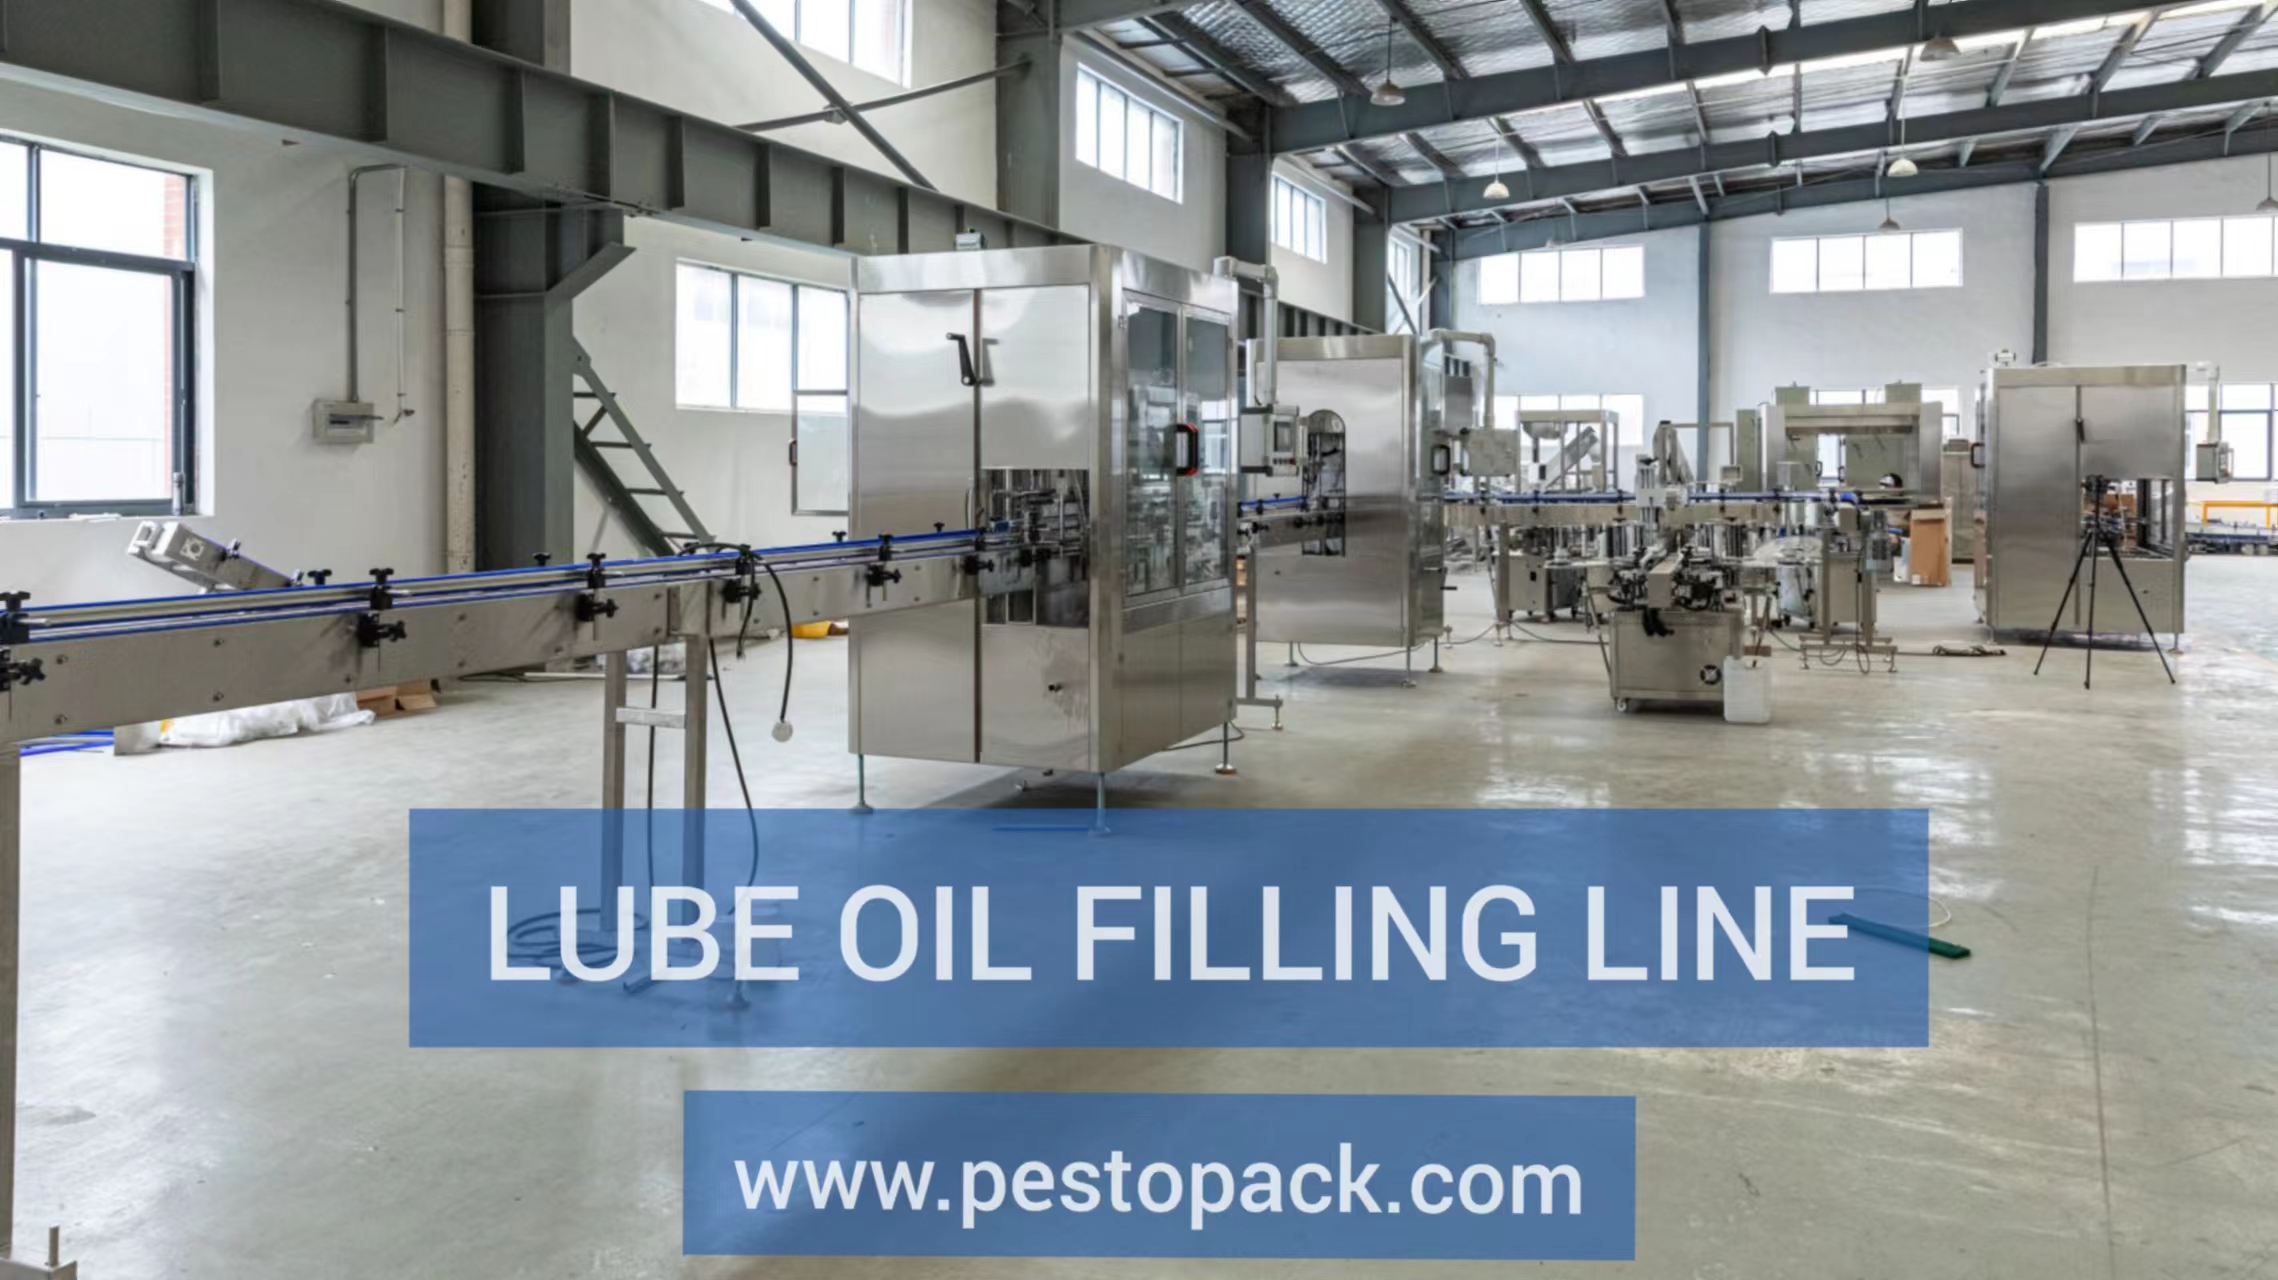 Lube oil filling line PESTOPACK.jpg